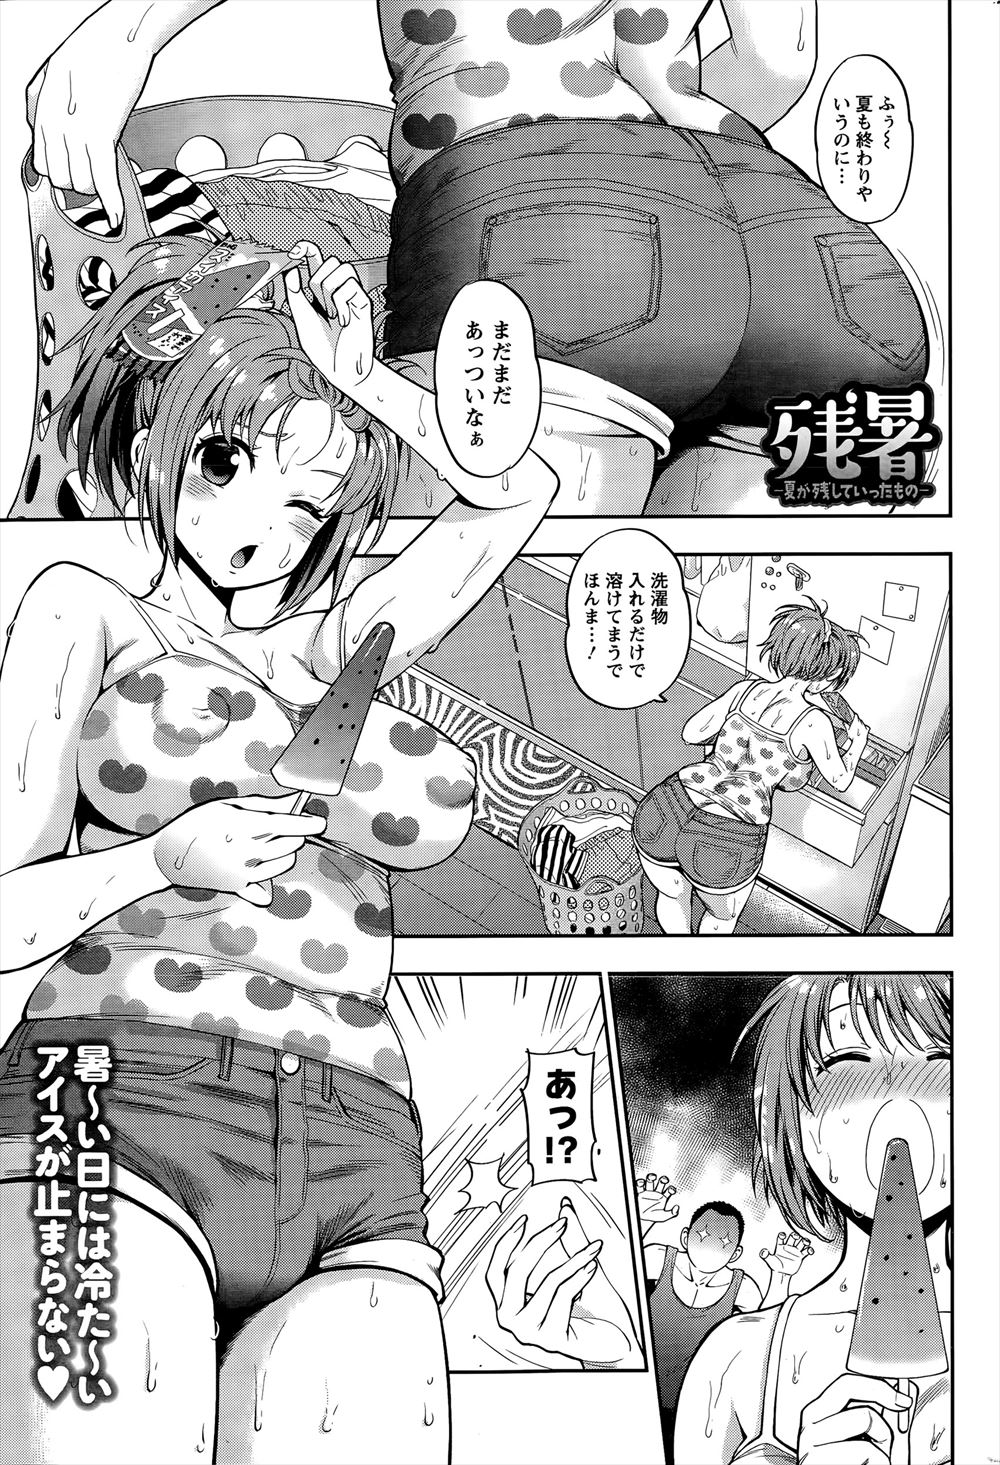 【エロ漫画】暑いのでアイスばっかりたべてぽっちゃり体型になってしまった関西弁の可愛い彼女 太ってないと言うので去年の水着を着させてみると案の定肉に食い込み水着が破けてしまったｗｗ